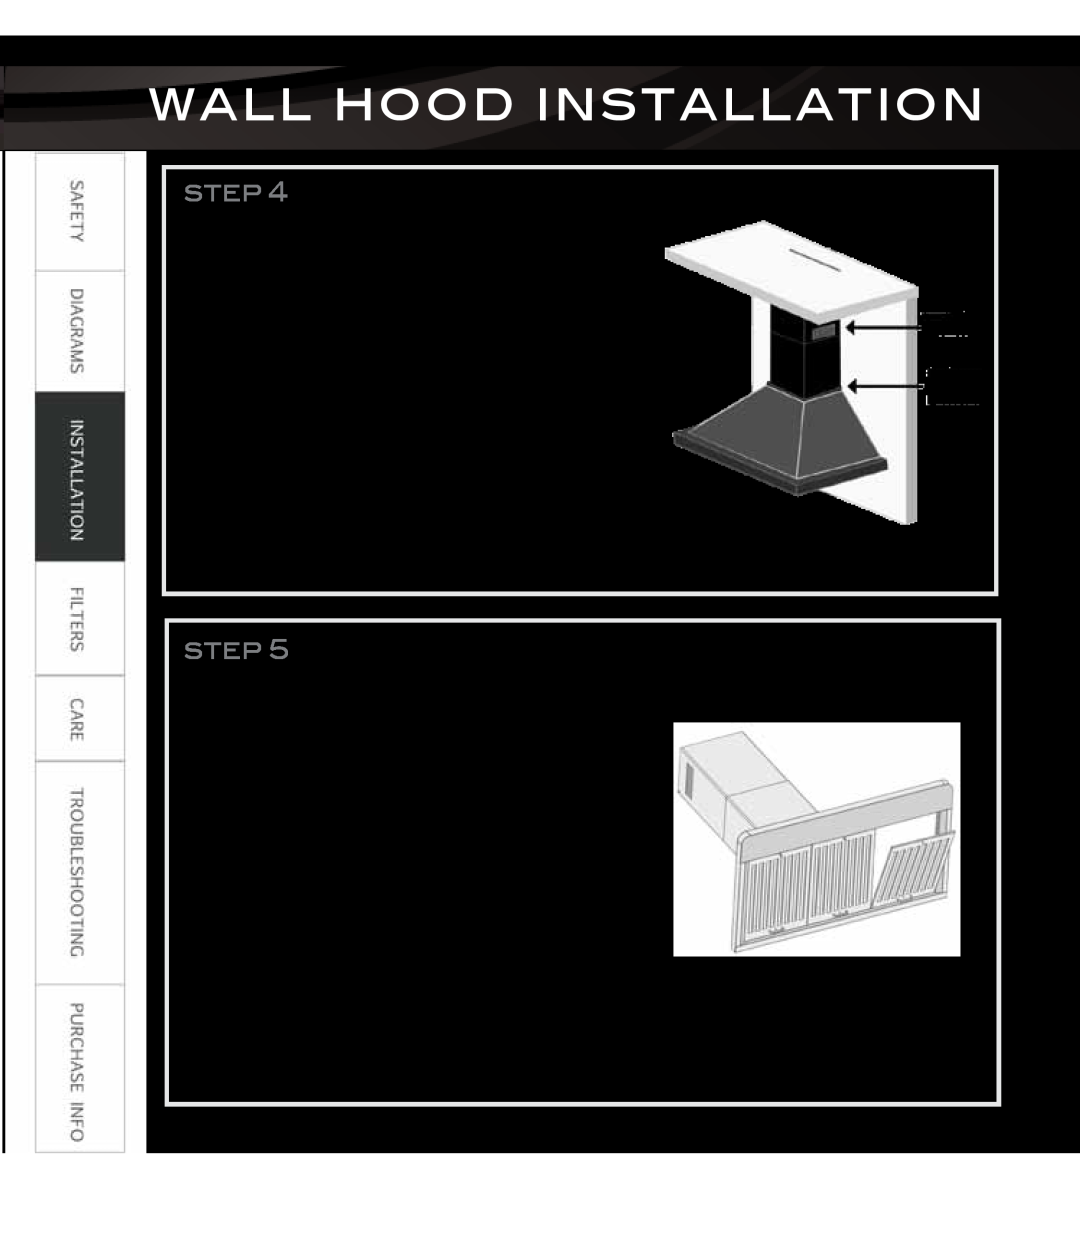 Proline PLZI697, PLZWKL2, PLZWKF, PLZW697, PLZWKE, PLZIGS2 Install chimney, Install grease filter, Wall Hood Installation 